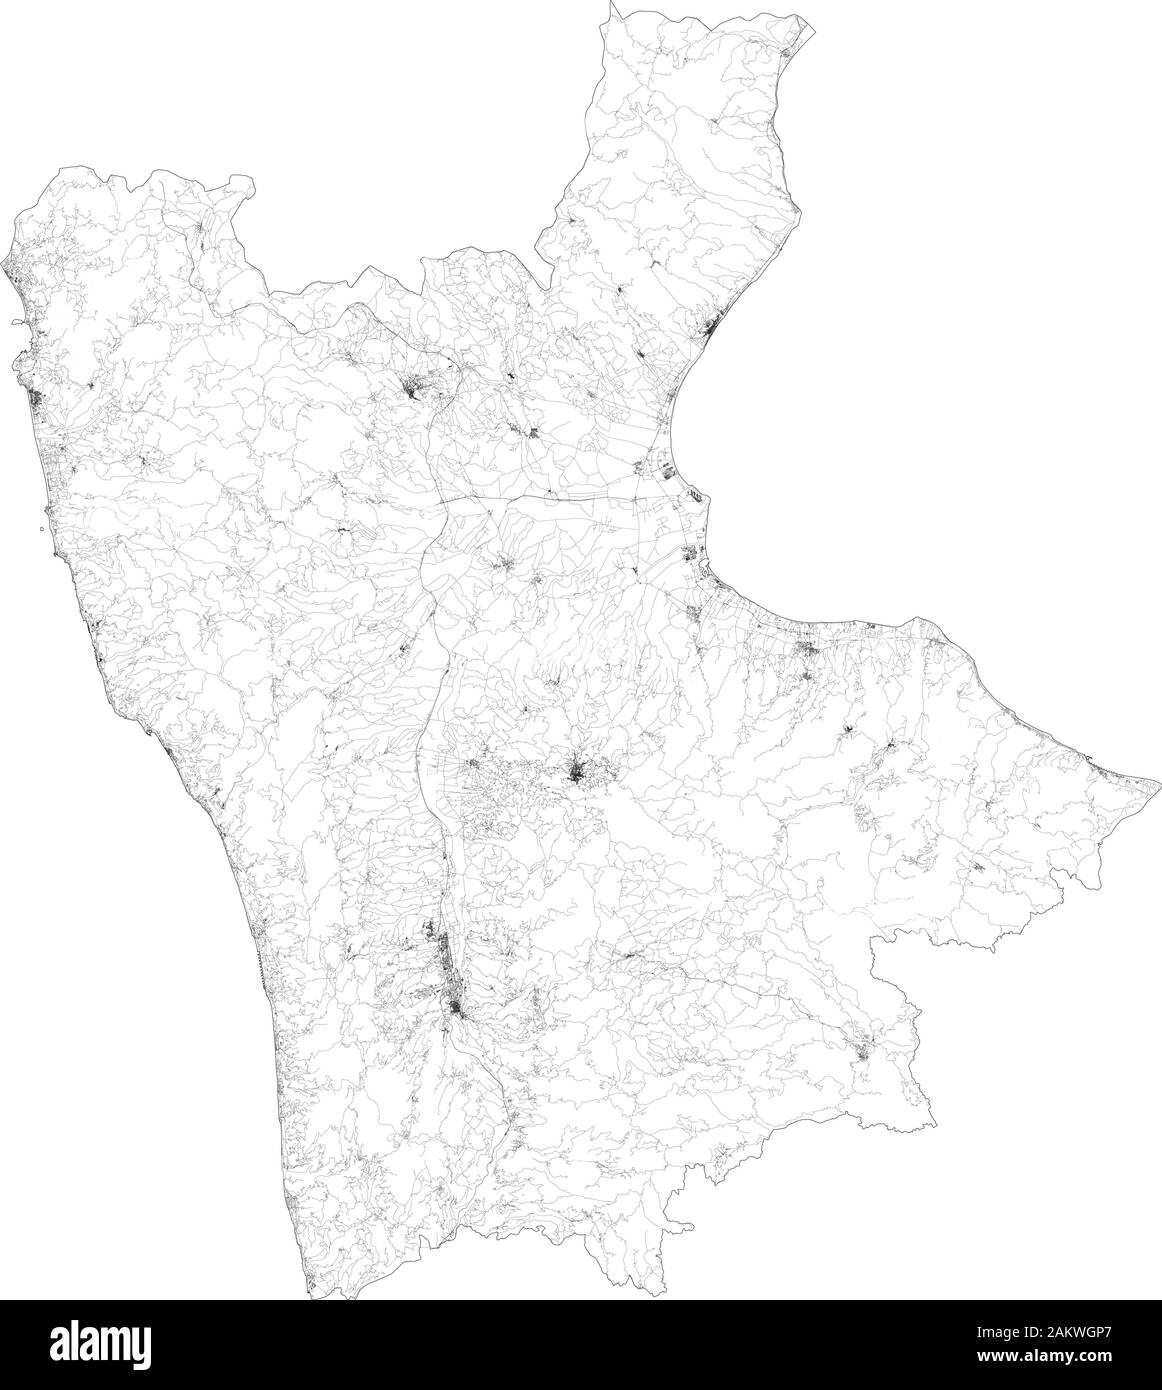 Sat-Karte der Provinz Cosenza, Städte und Straßen, Gebäude und Straßen der Umgebung. Region Kalabrien, Italien. Karte Straßen Stock Vektor